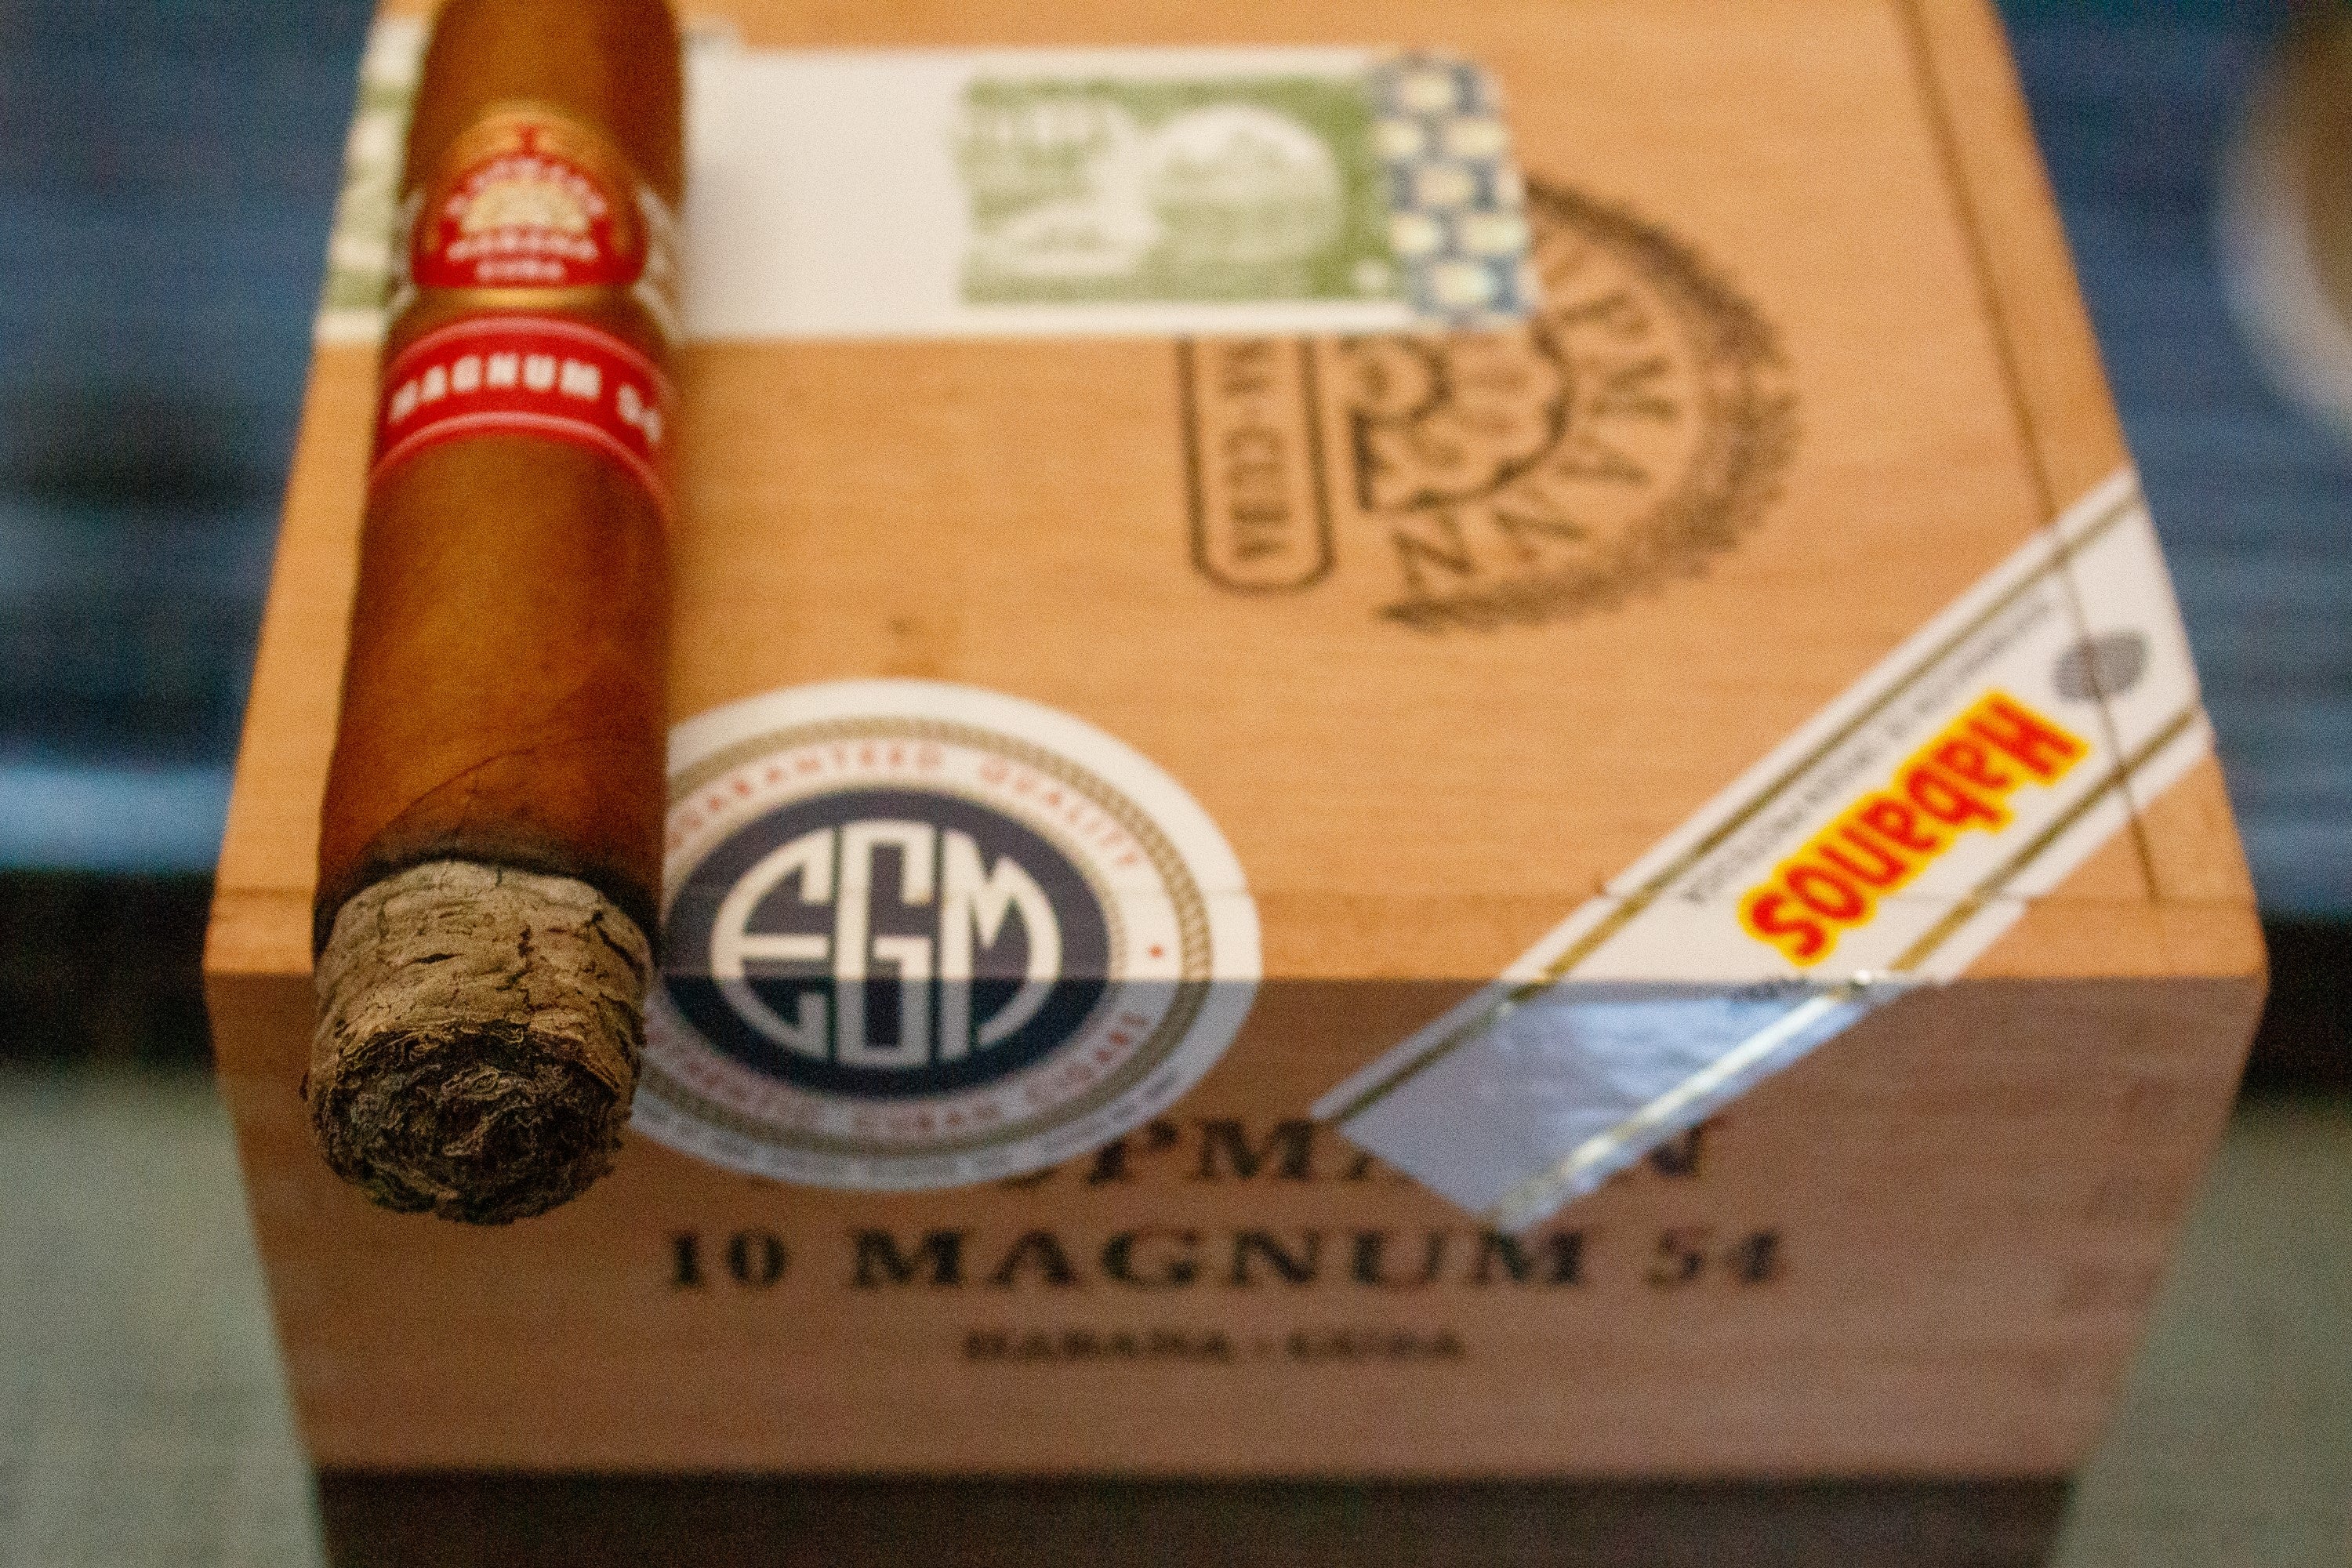 H Upmann Magnum 54 Cigar